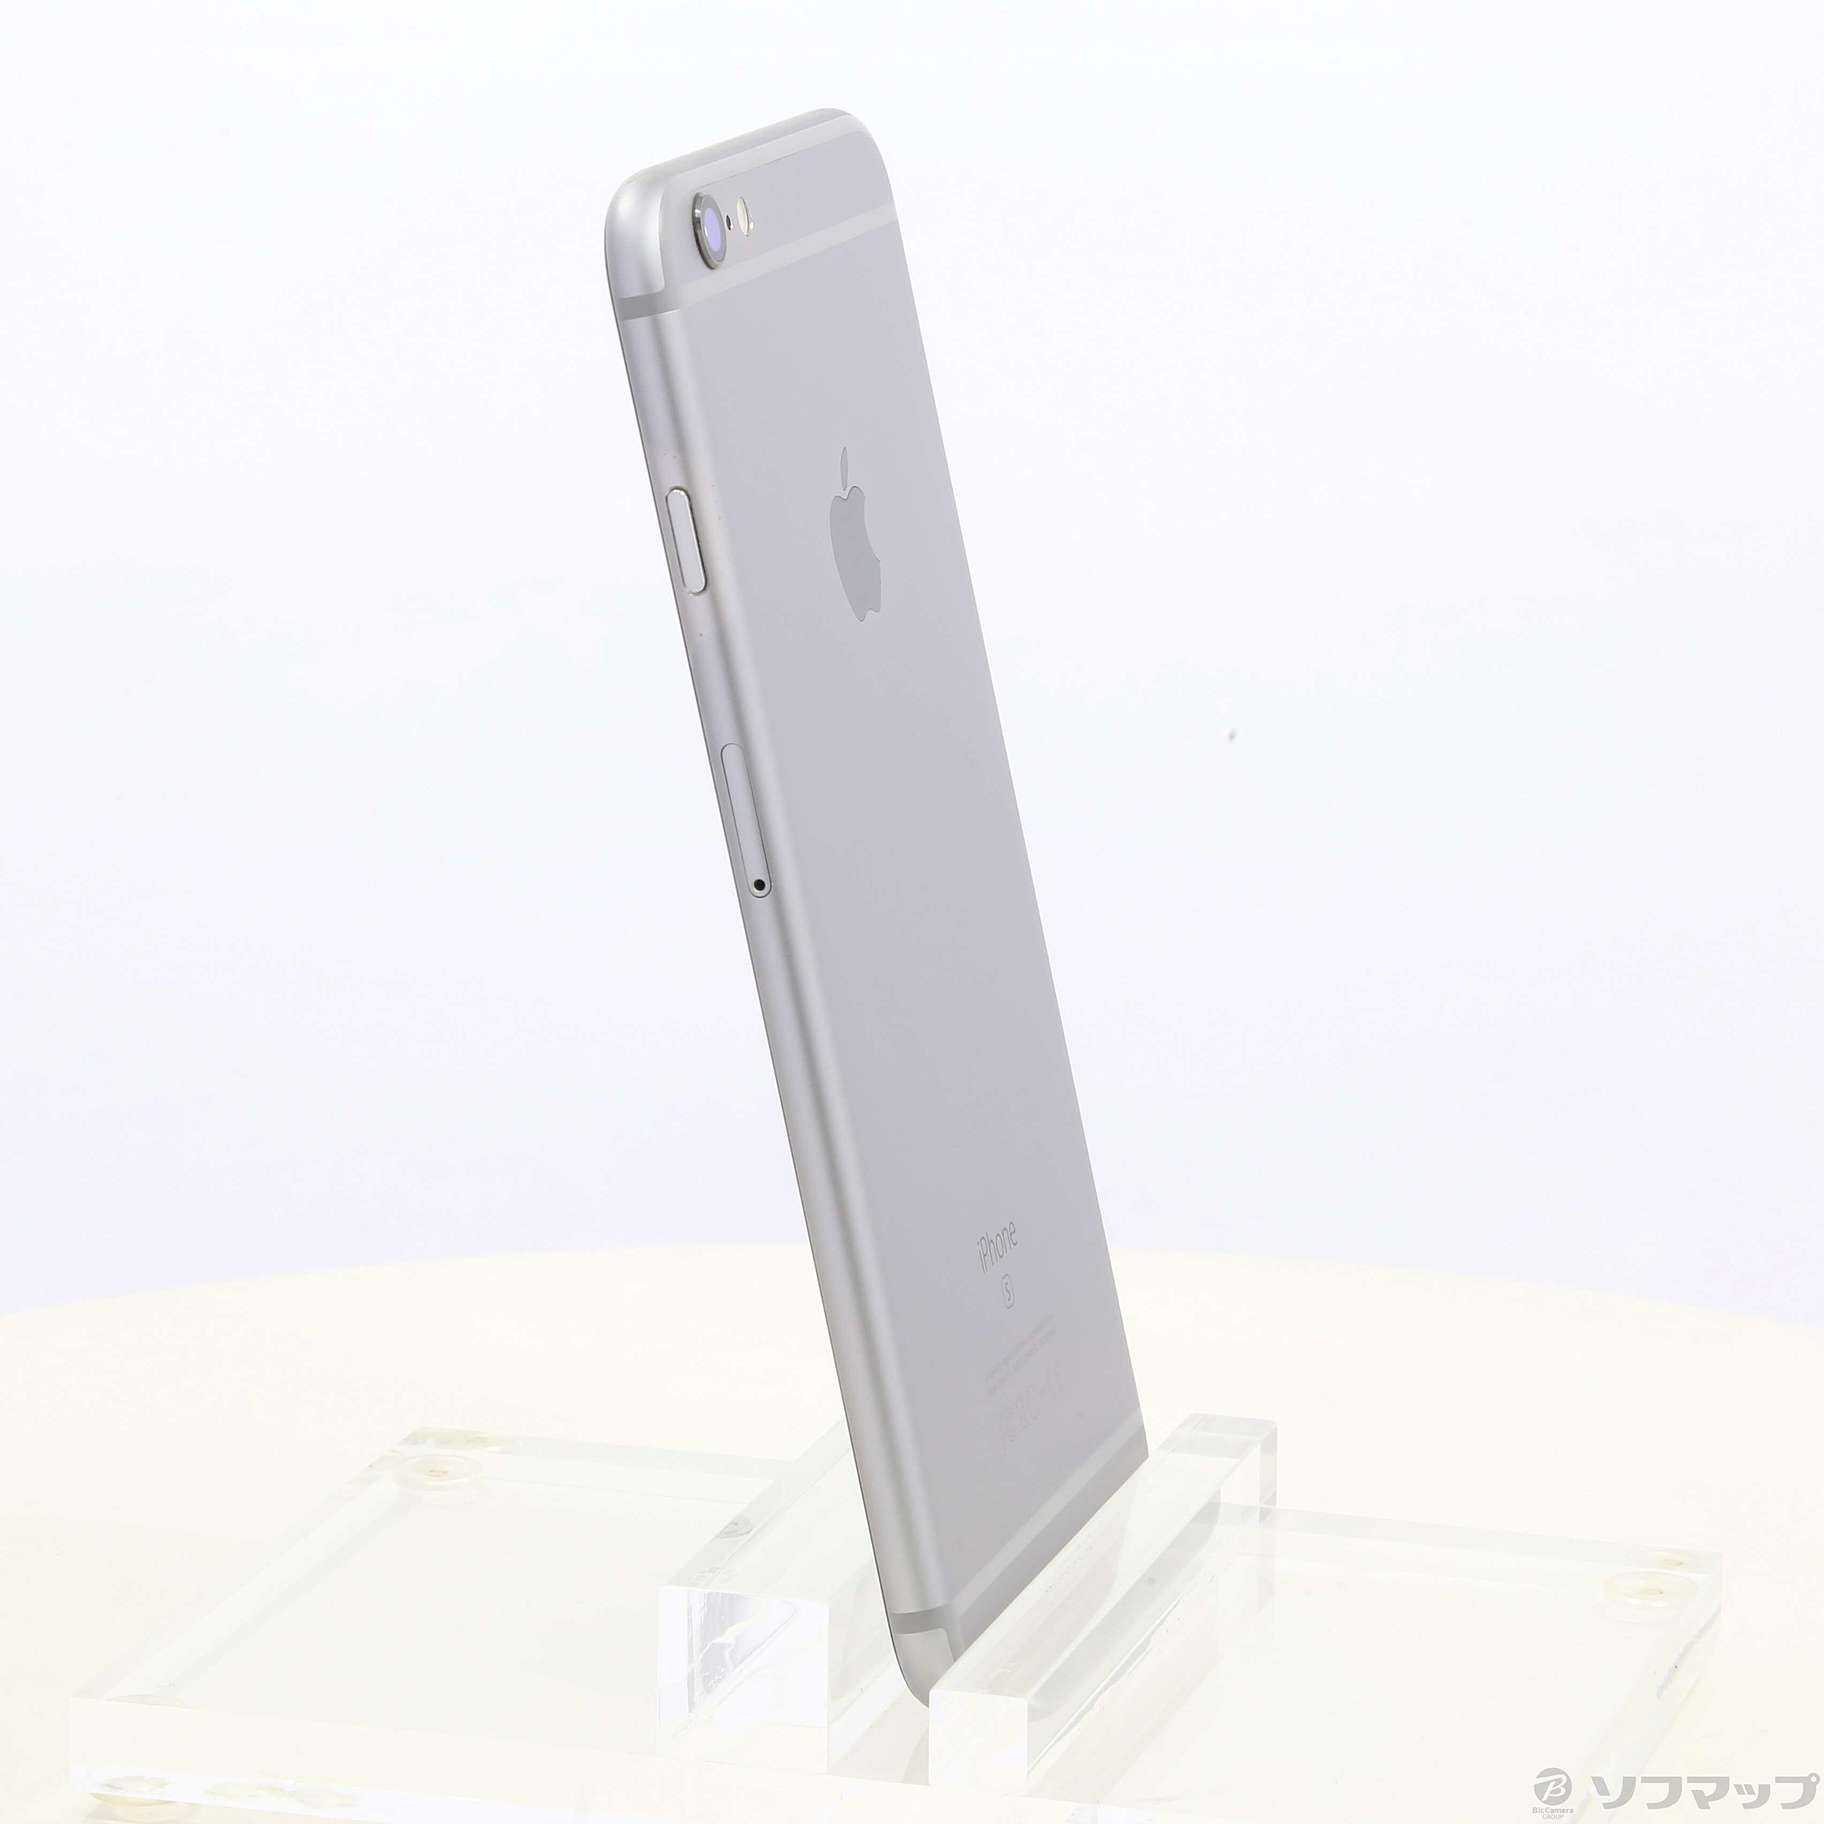 日本製格安SoftBank MKU62J/A iPhone 6s Plus 64GB スペースグレイ SB iPhone